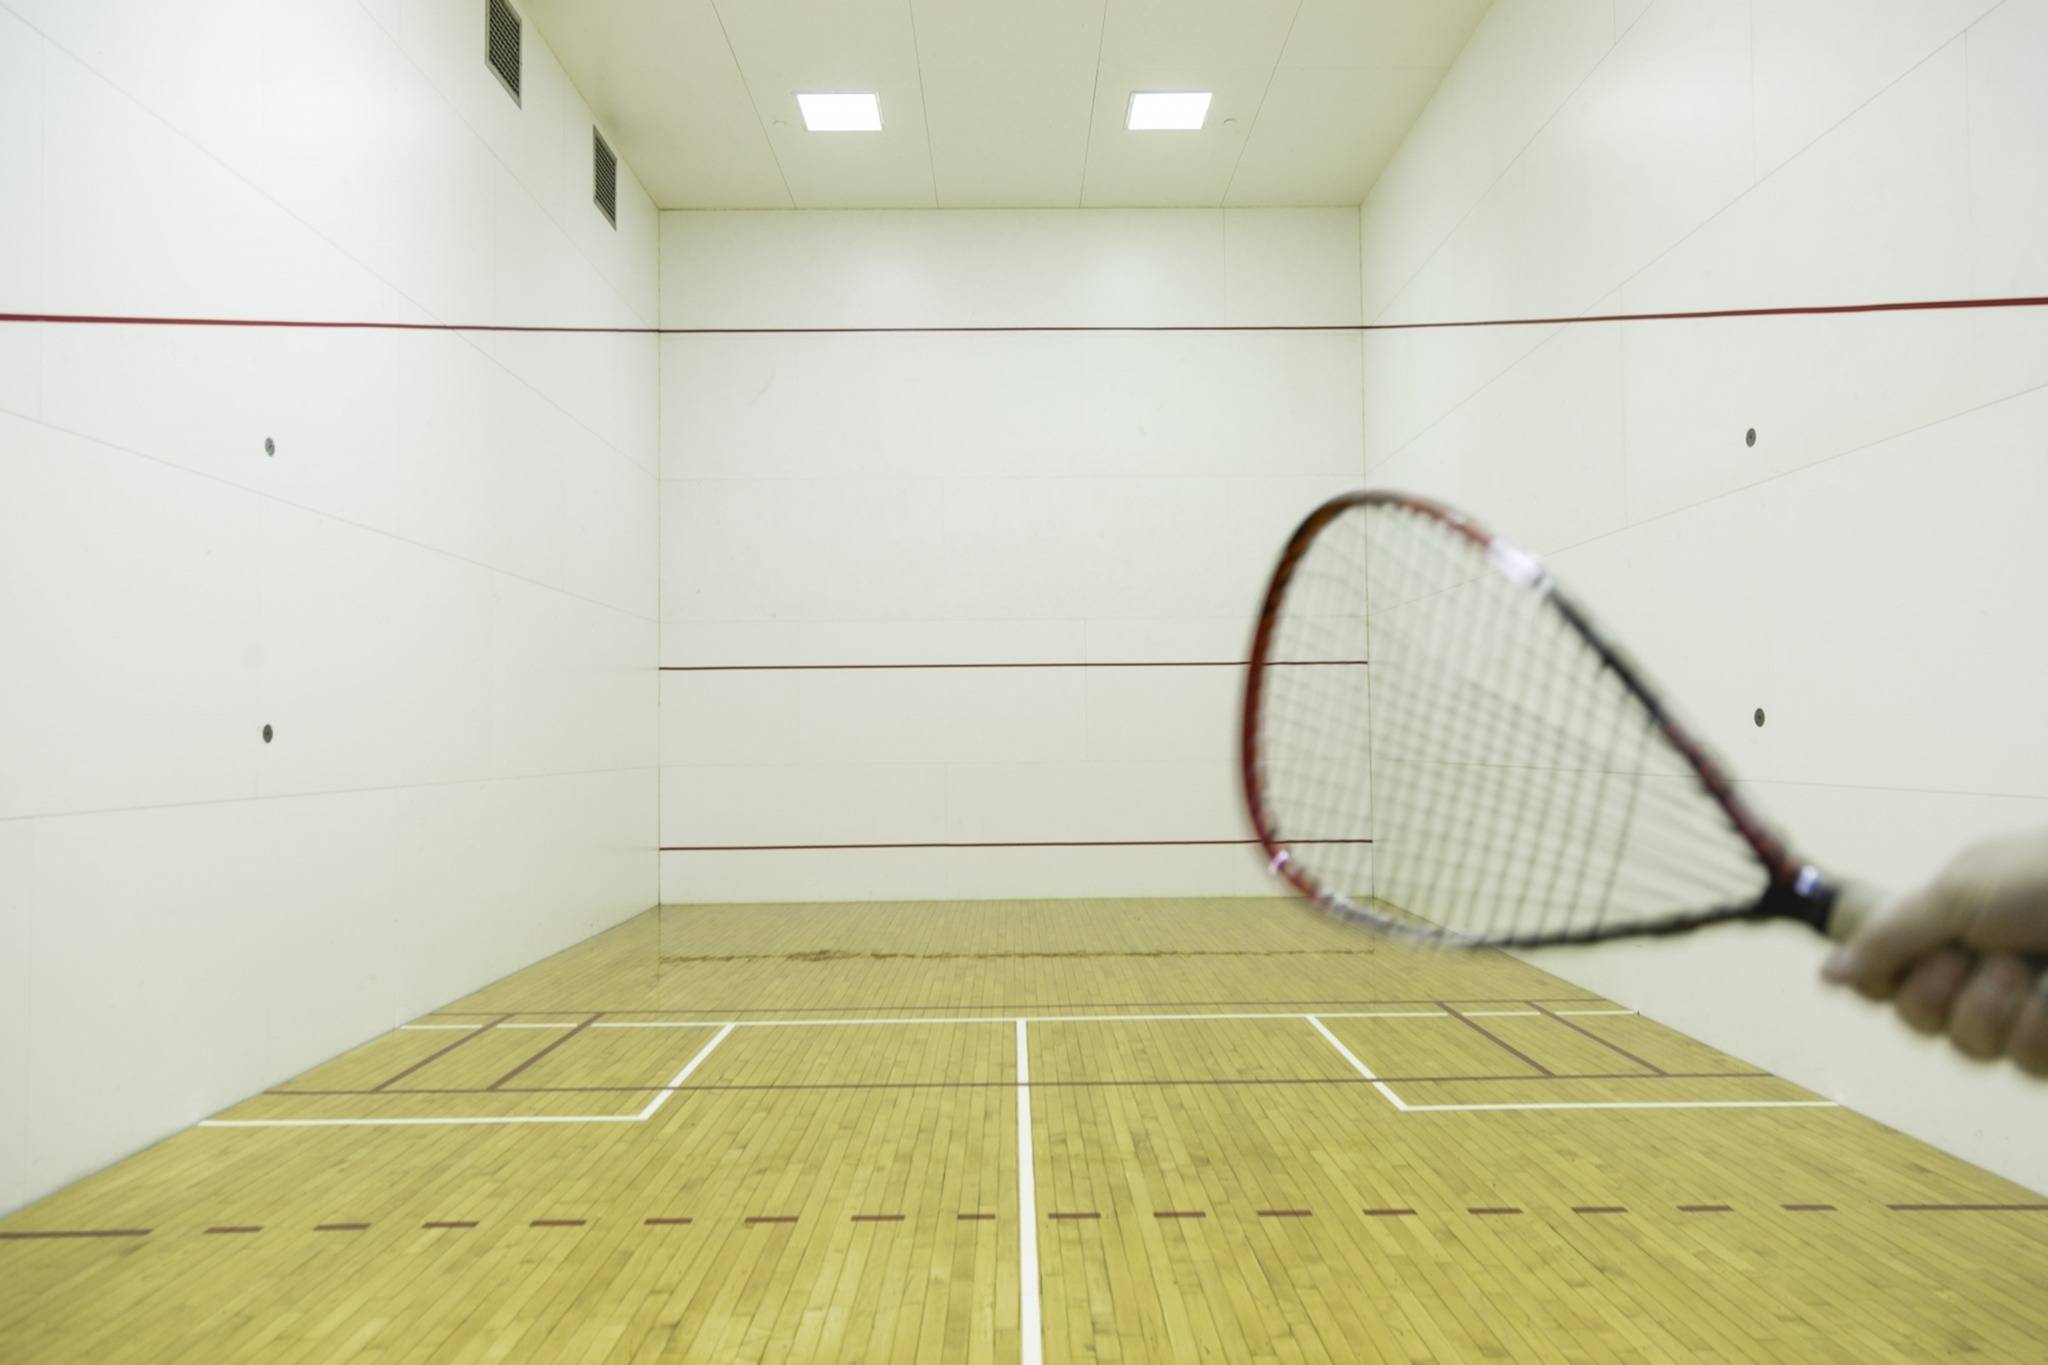 Racquetball/Squash Court